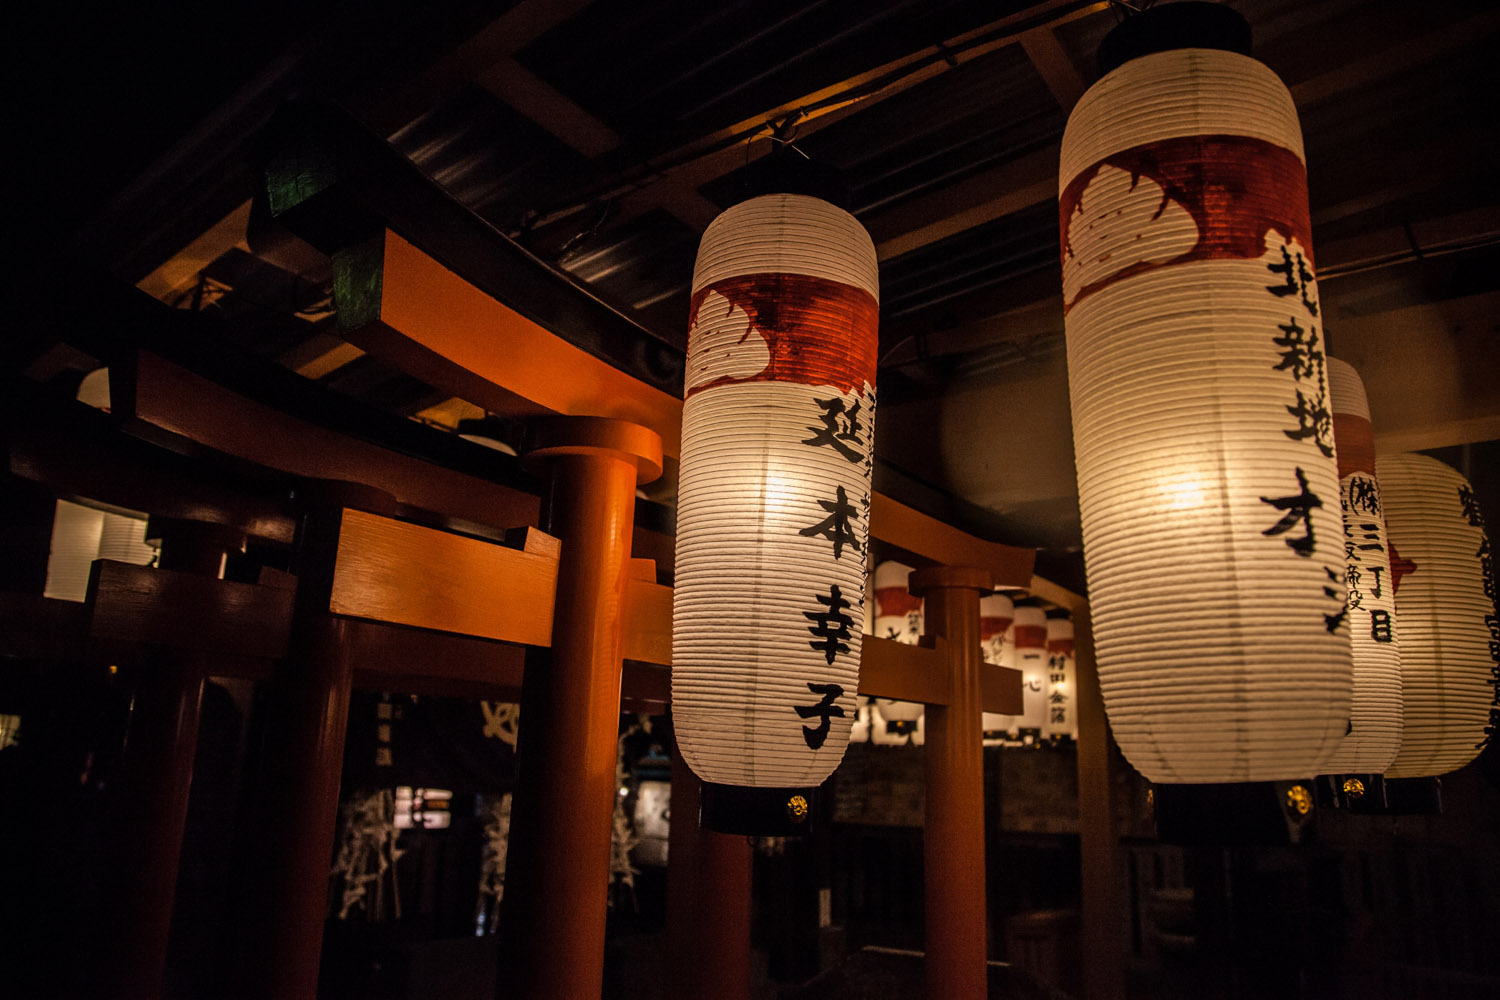 Swaying lanterns frozen by a fast shutter – Hozen-ji temple, Osaka